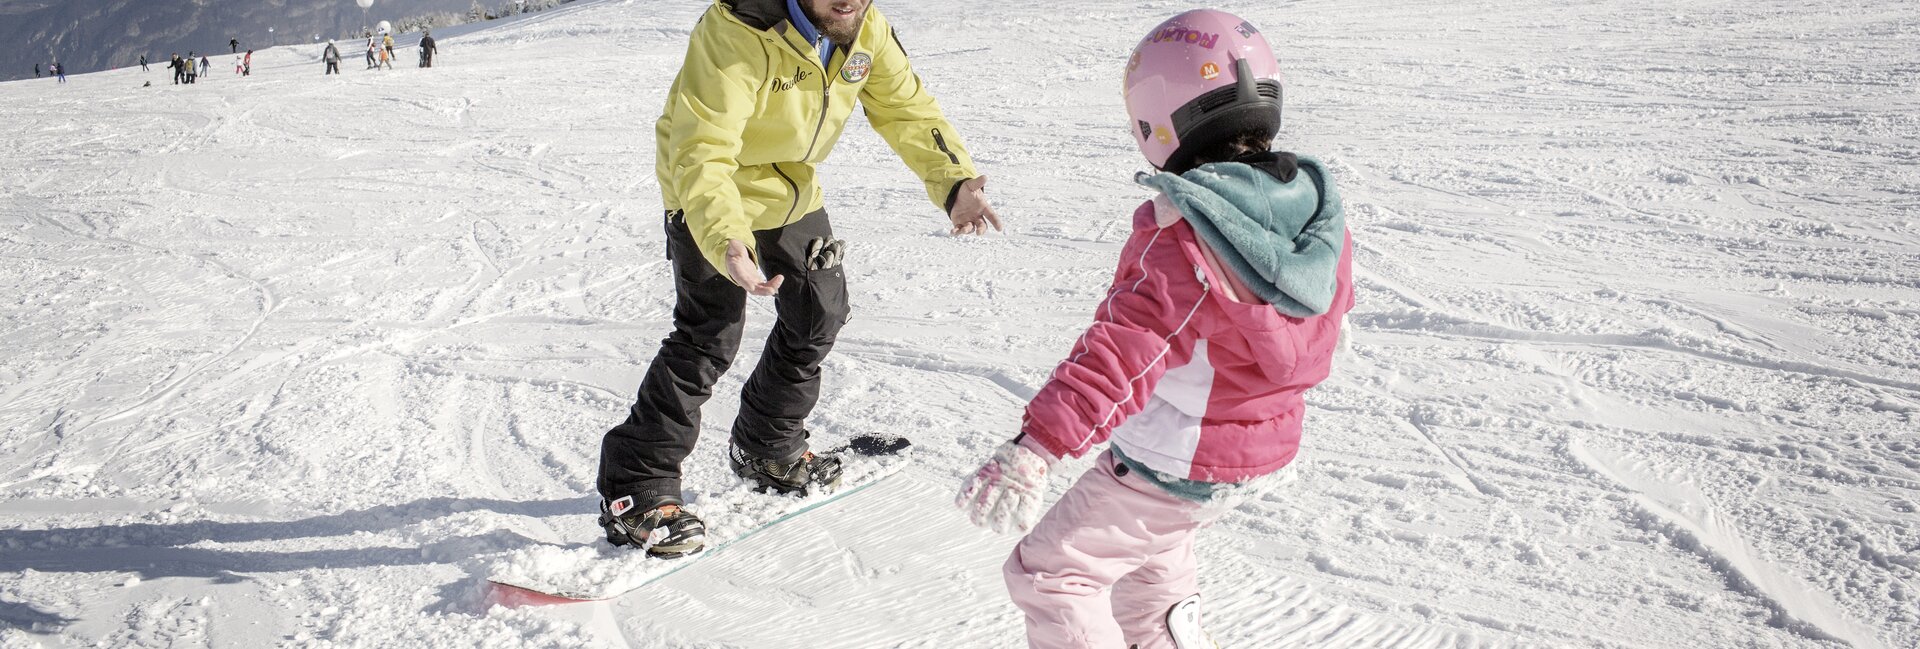 Trento - Monte Bondone - Maestro di snowboard con bambina
